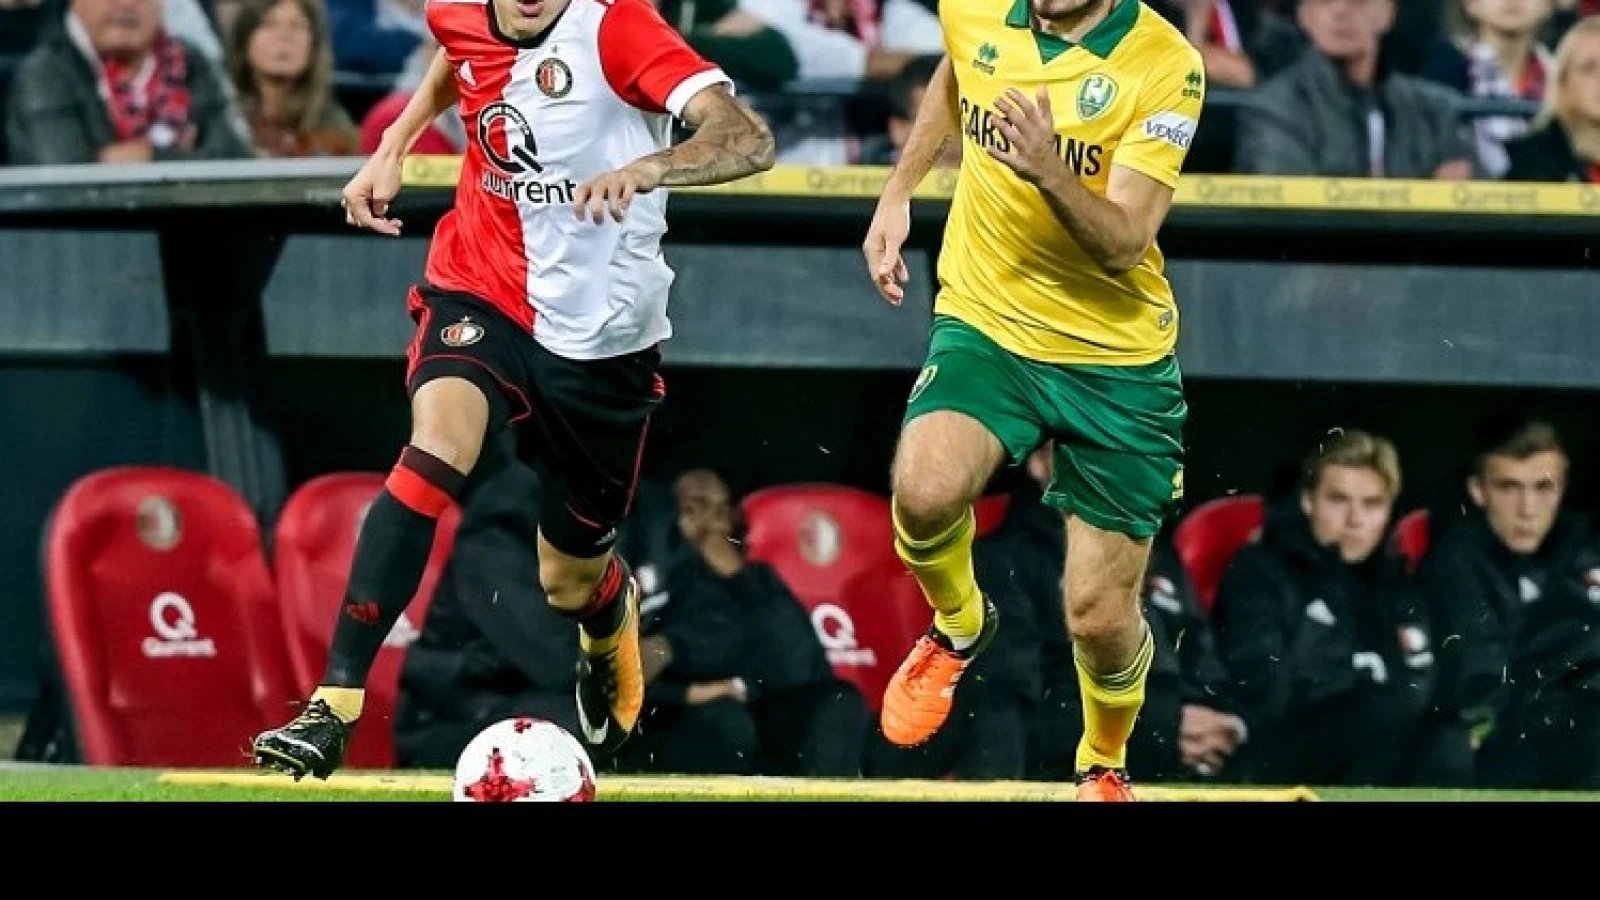 Opstelling | Feyenoord met Diks en Amrabat